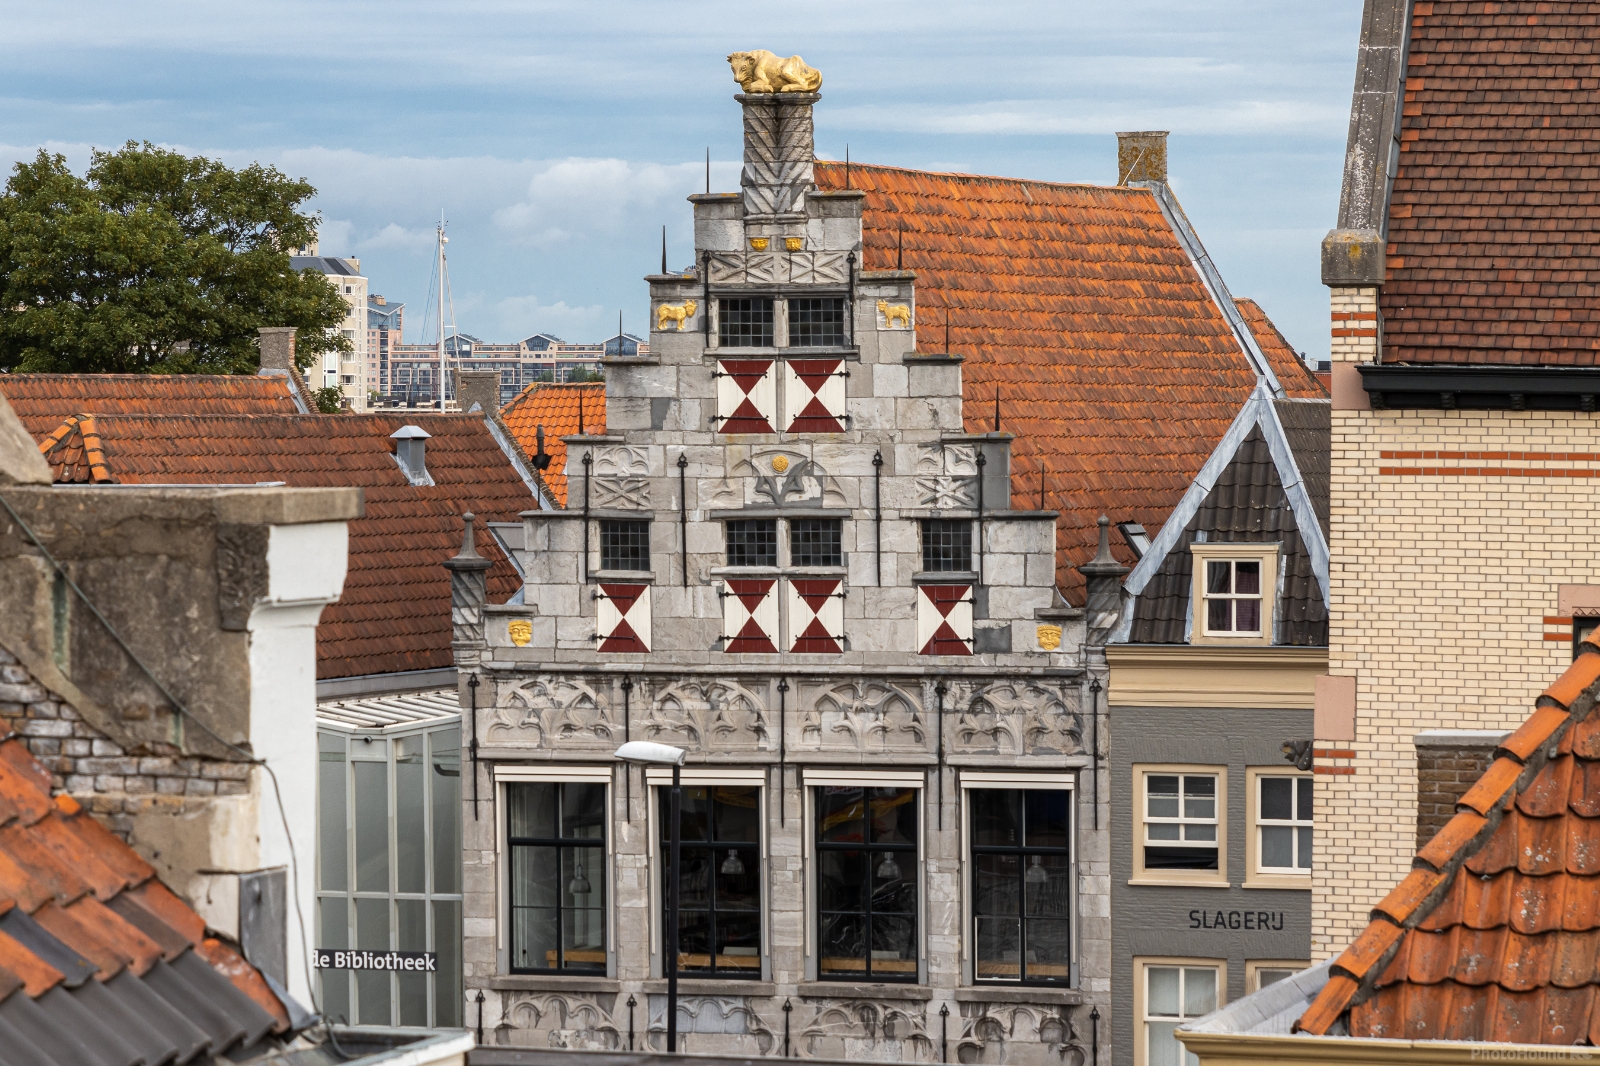 Image of Dordrecht Old Town by Ruud Bijvank